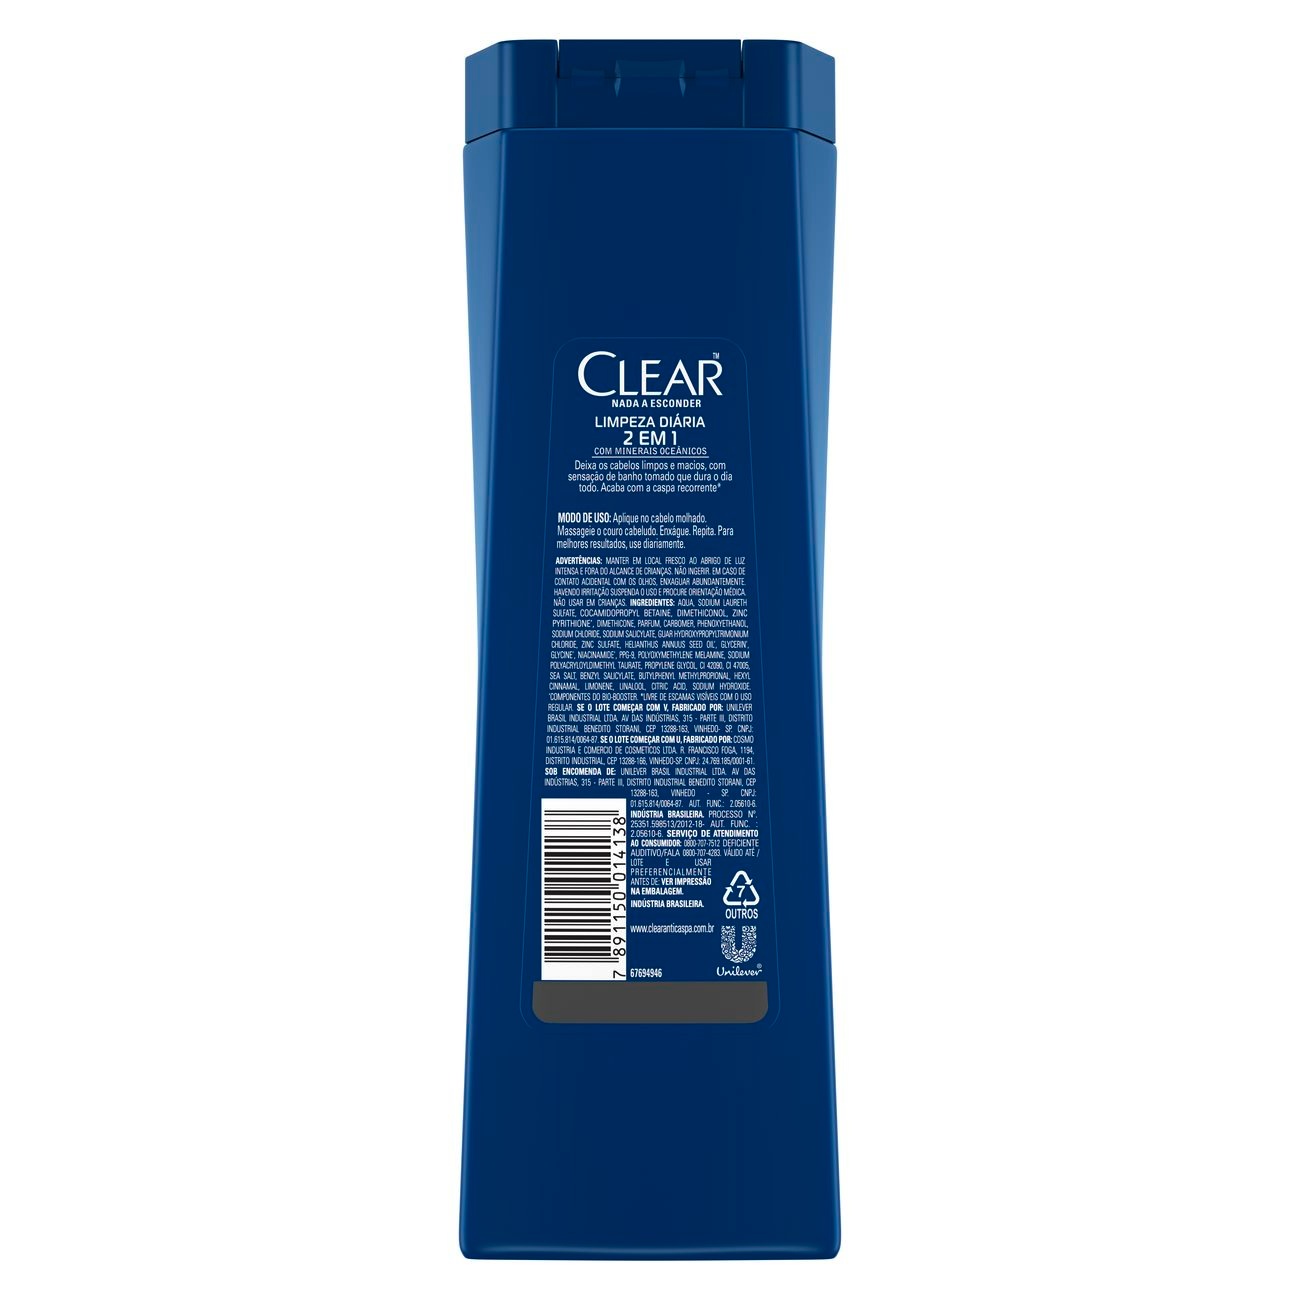 Shampoo Anticaspa Clear Limpeza Diria 2 Em 1 400ml